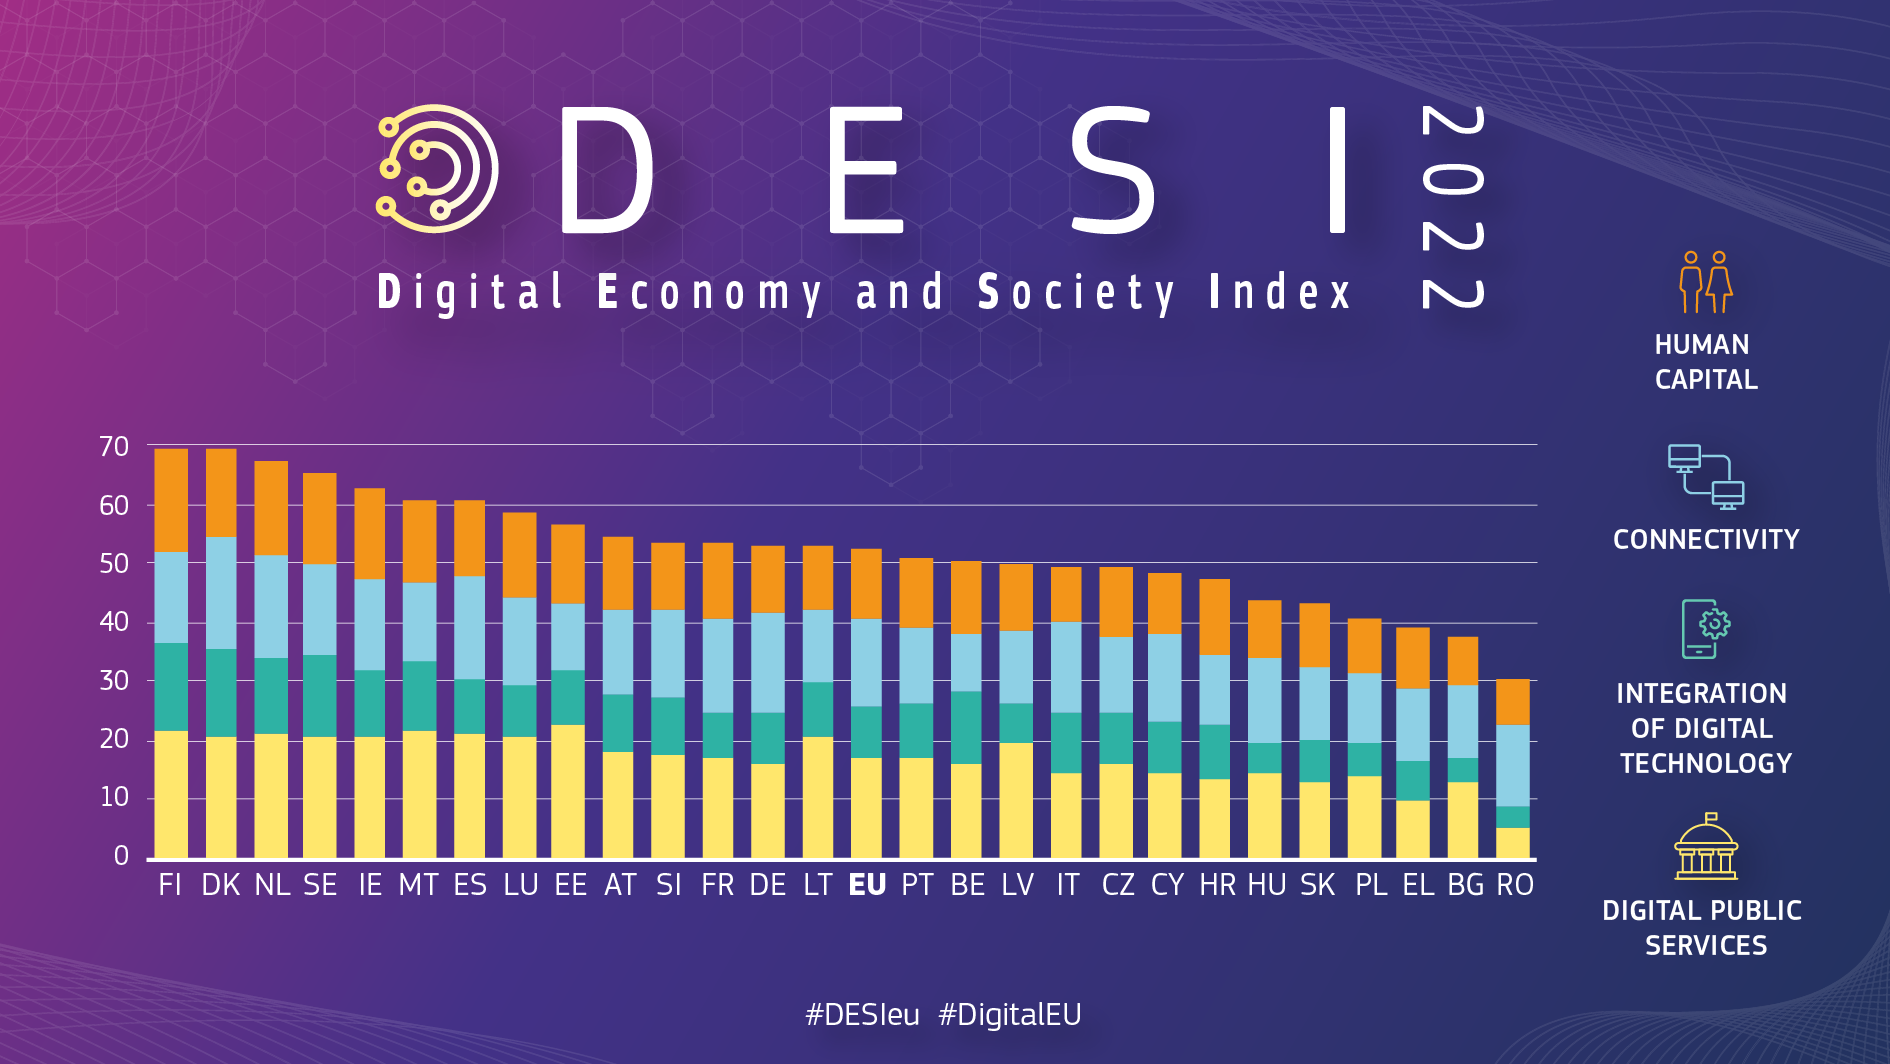 Graphique indiquant la performance des pays dans DESI: Le Danemark, la Finlande et les Pays-Bas en tête des performances numériques